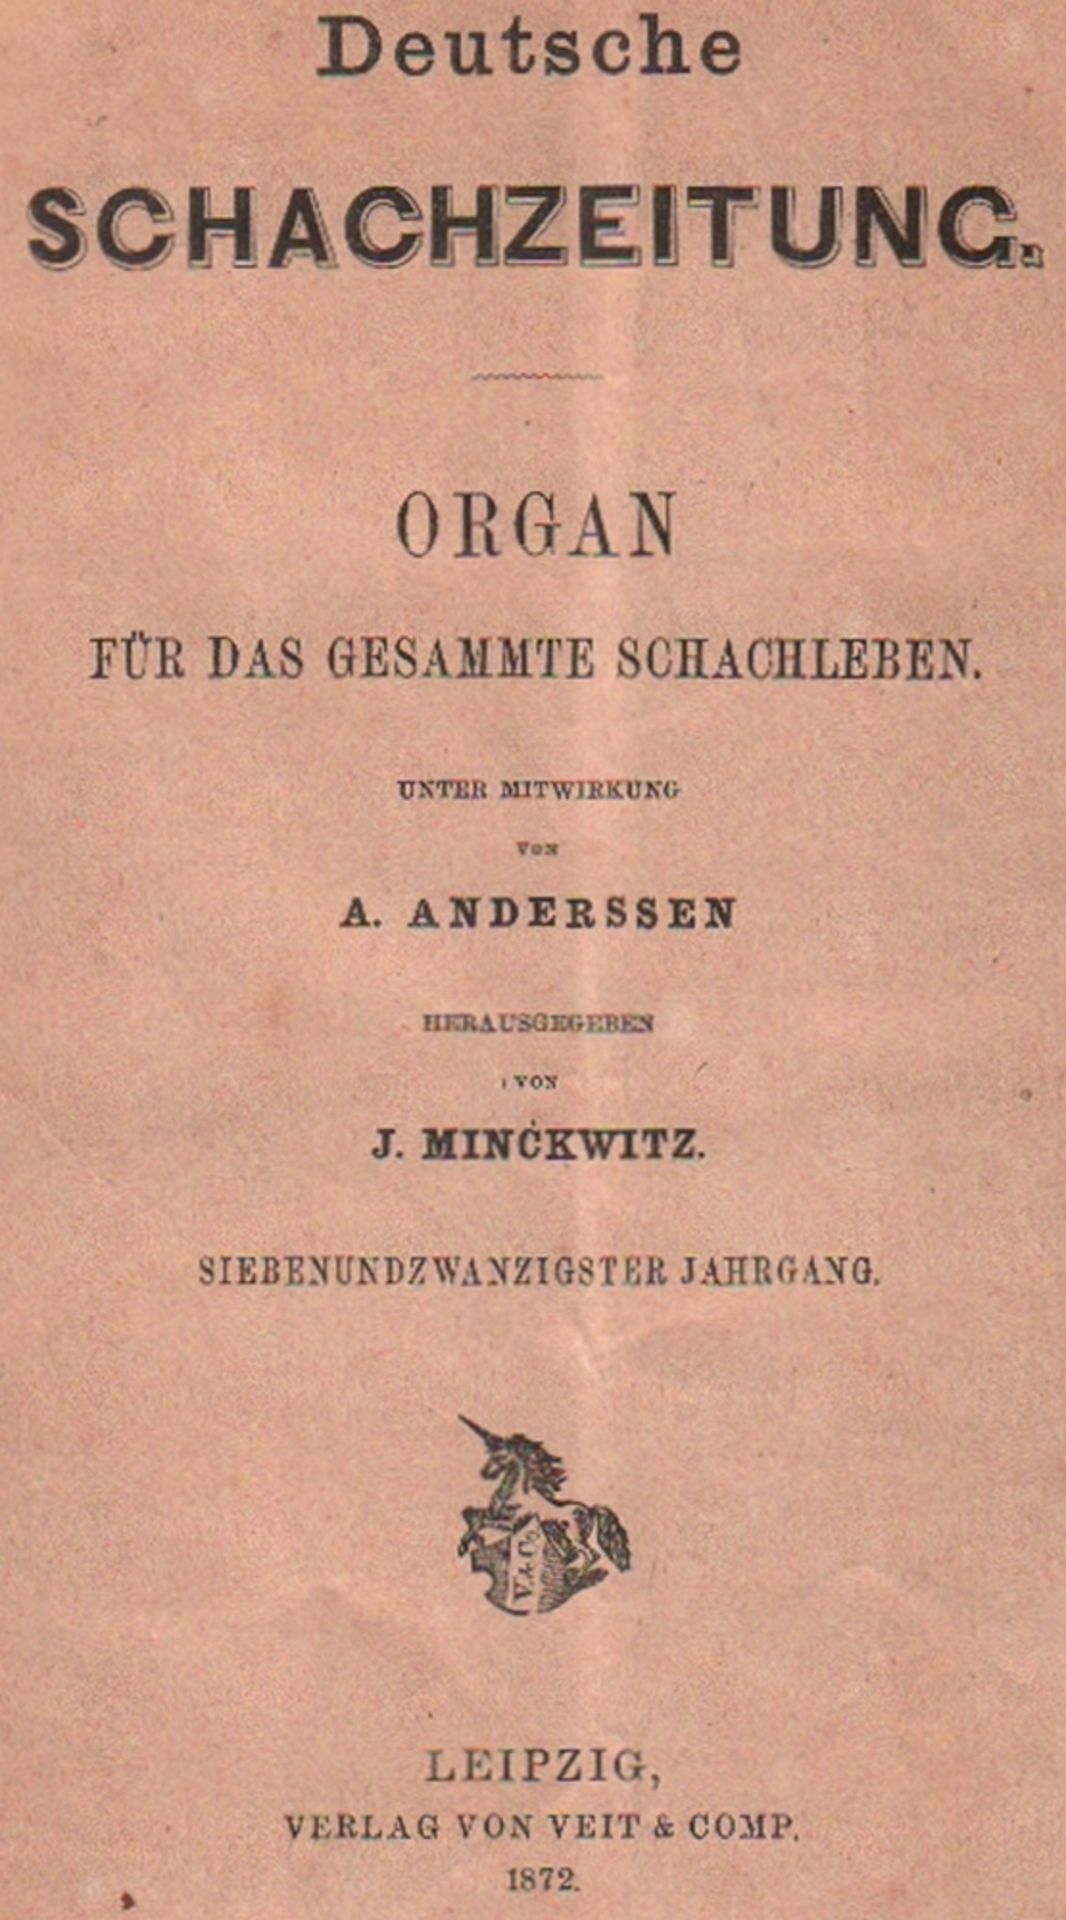 Deutsche Schachzeitung. Organ für das gesammte Schachleben. Hrsg. von J. Minckwitz. 27. Jahrgang